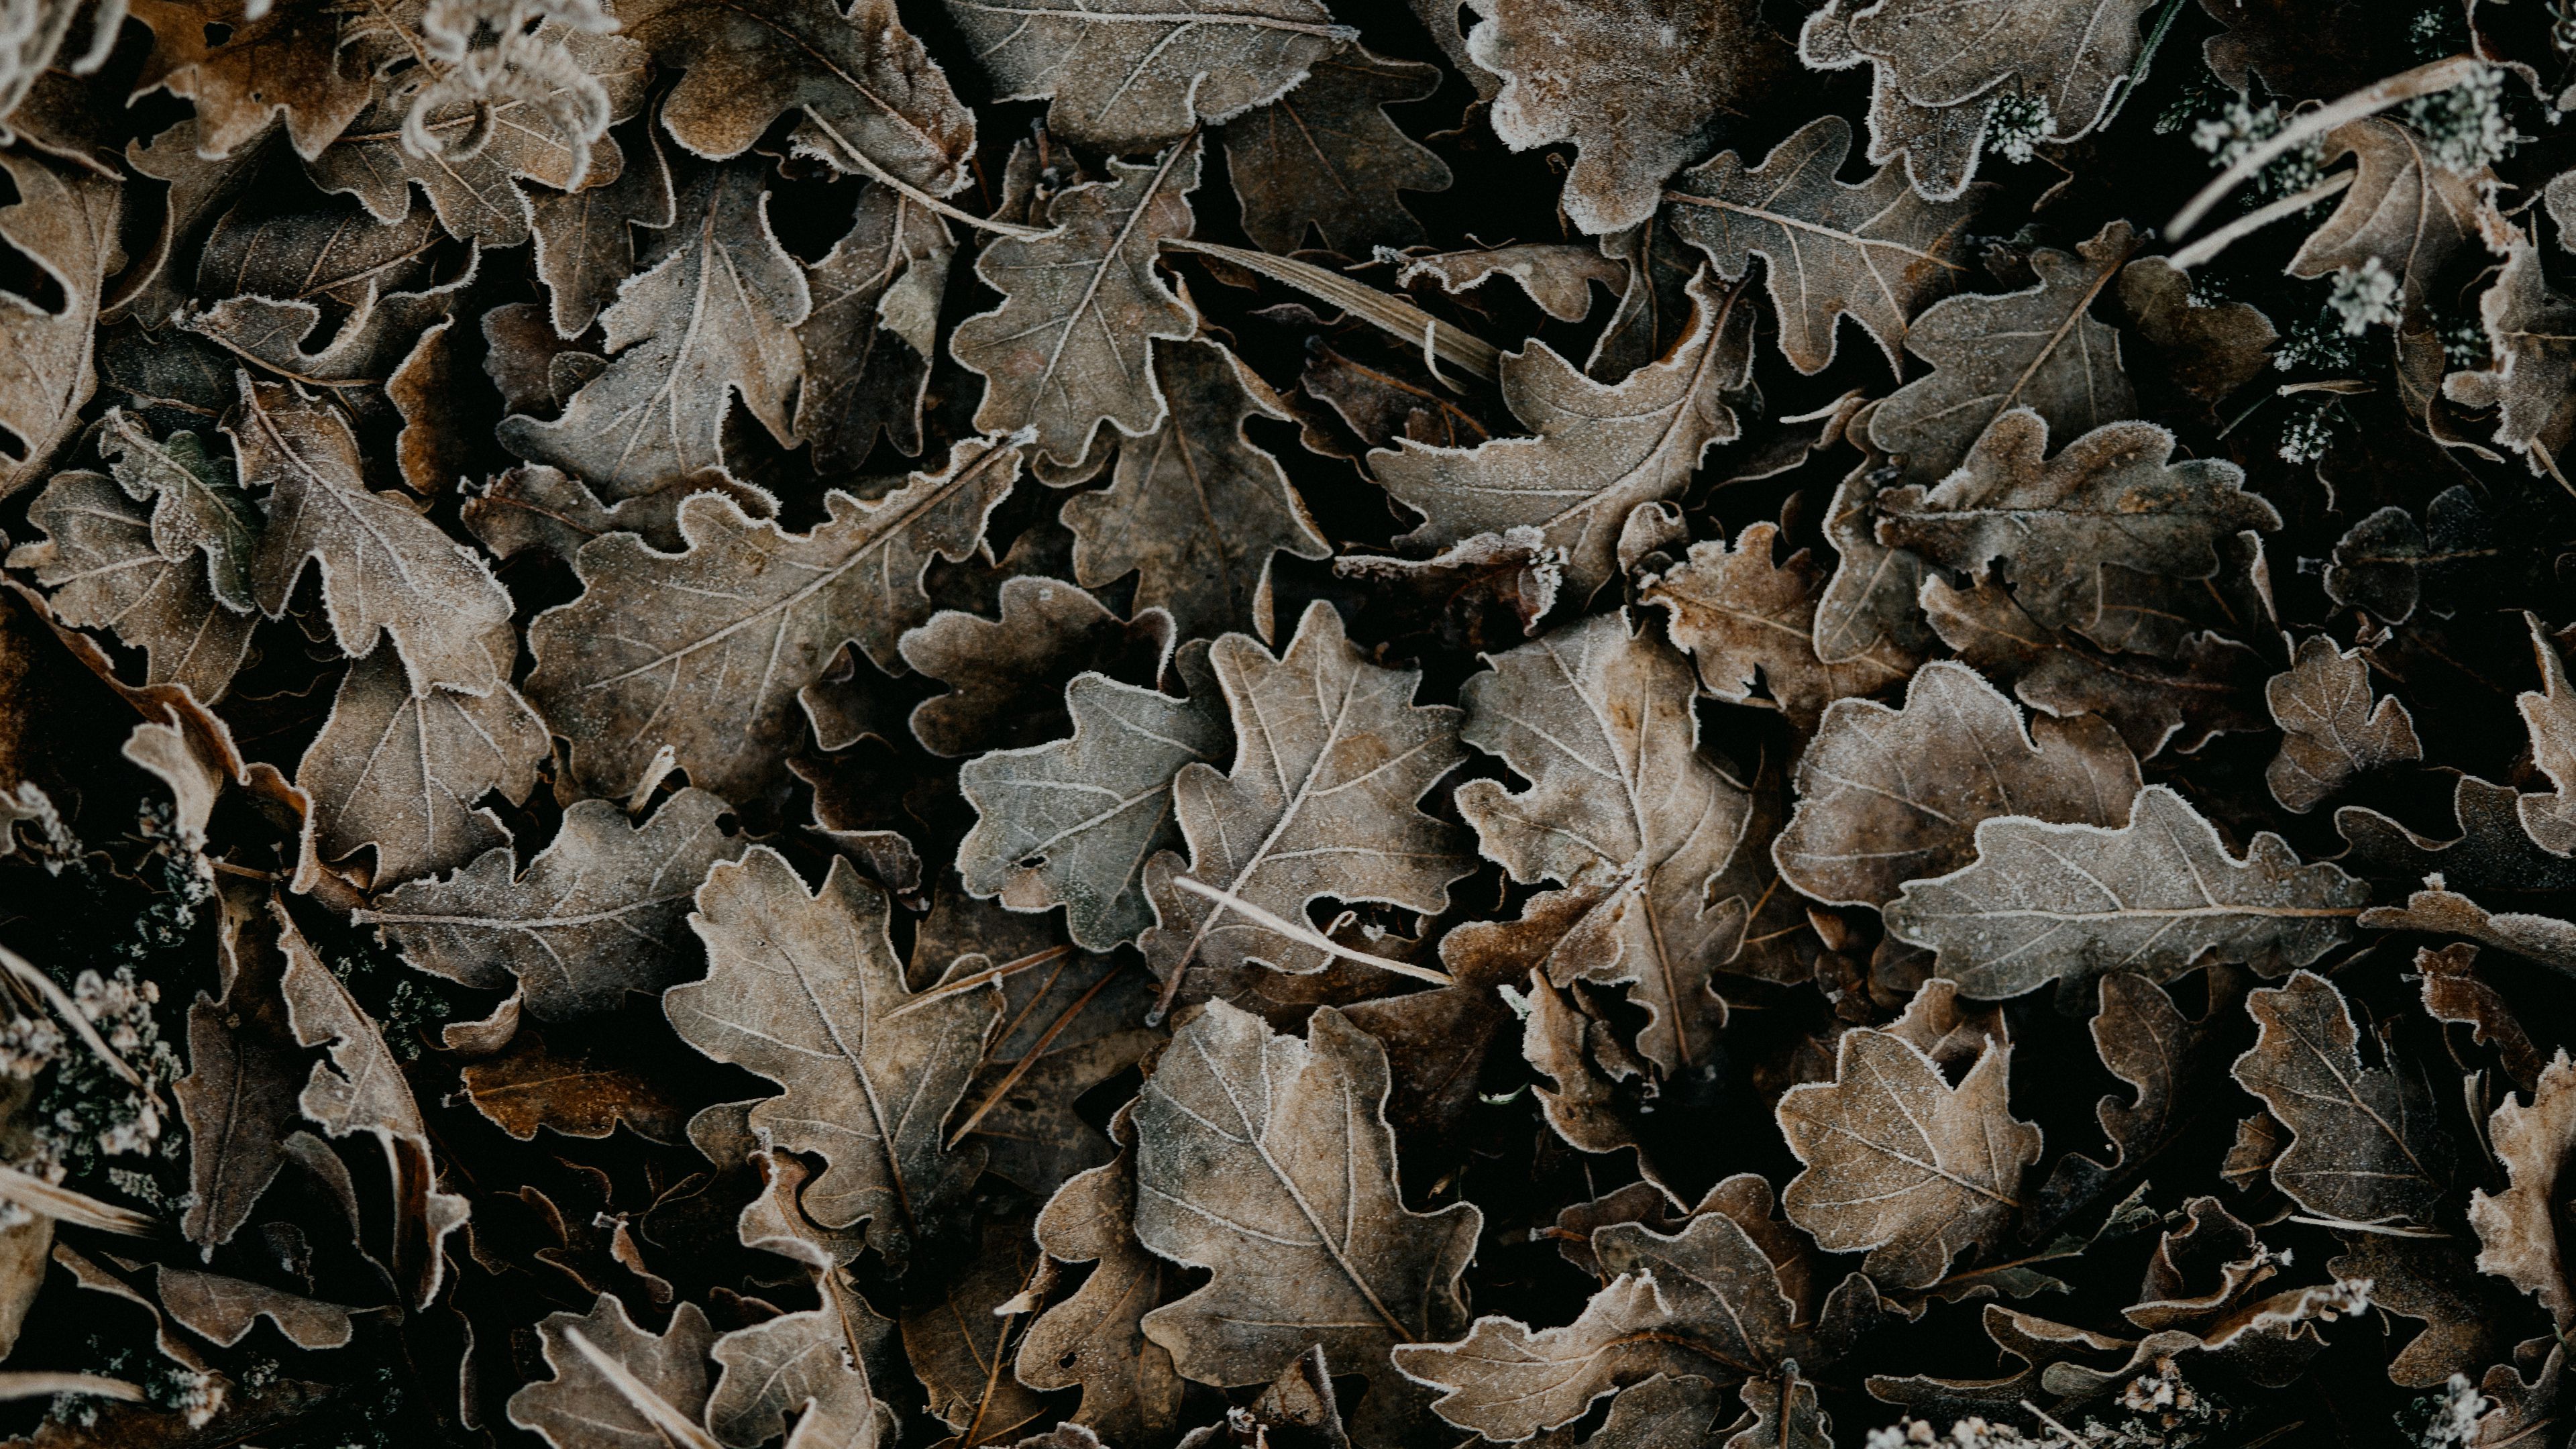 Download wallpaper 3840x2160 leaves, dry, fallen, macro 4k uhd 16:9 hd